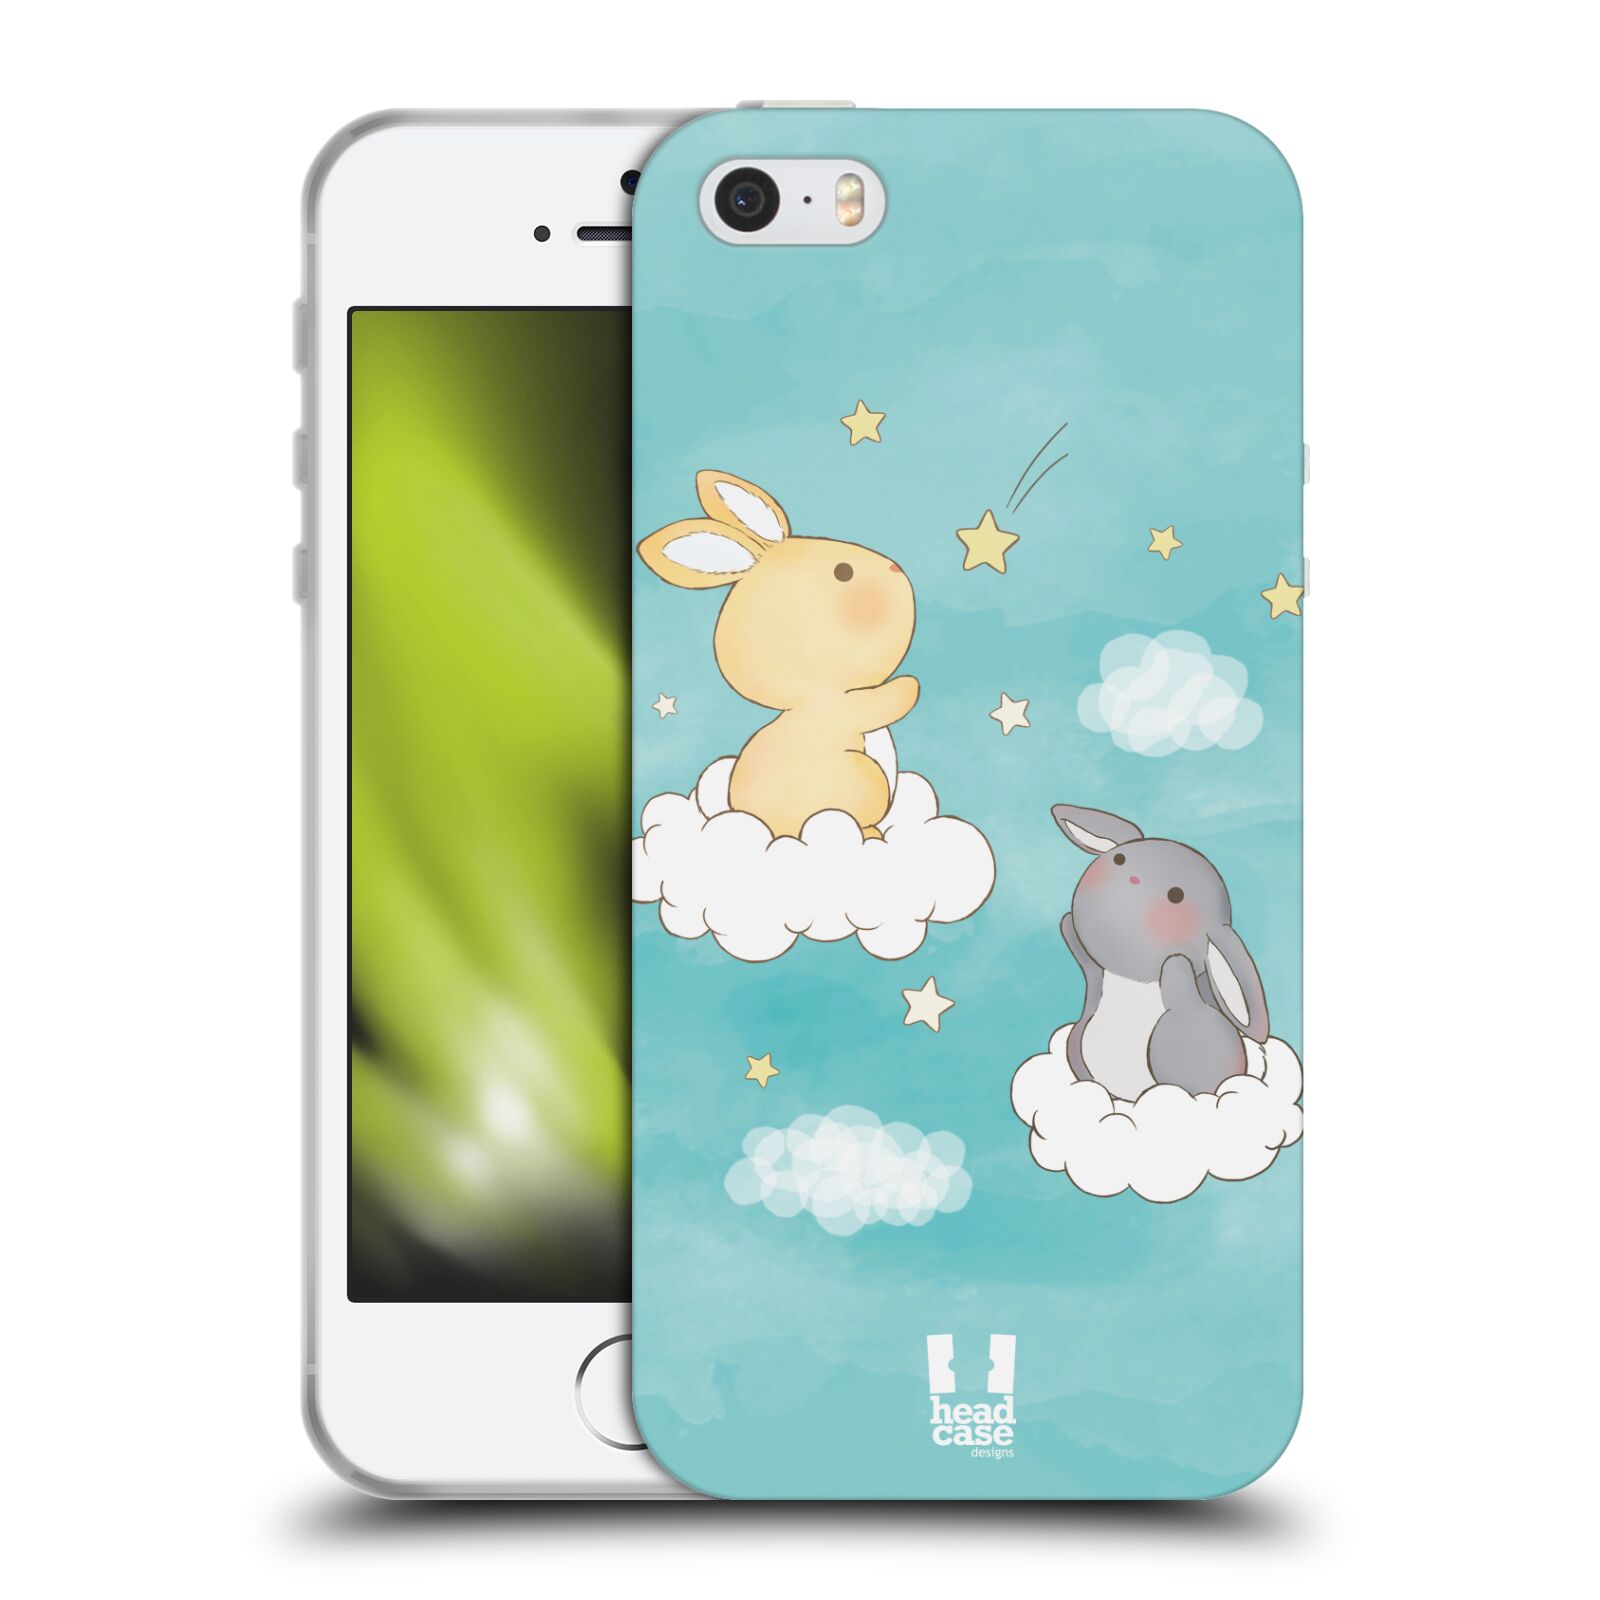 HEAD CASE silikonový obal na mobil Apple Iphone 5/5S vzor králíček a hvězdy modrá